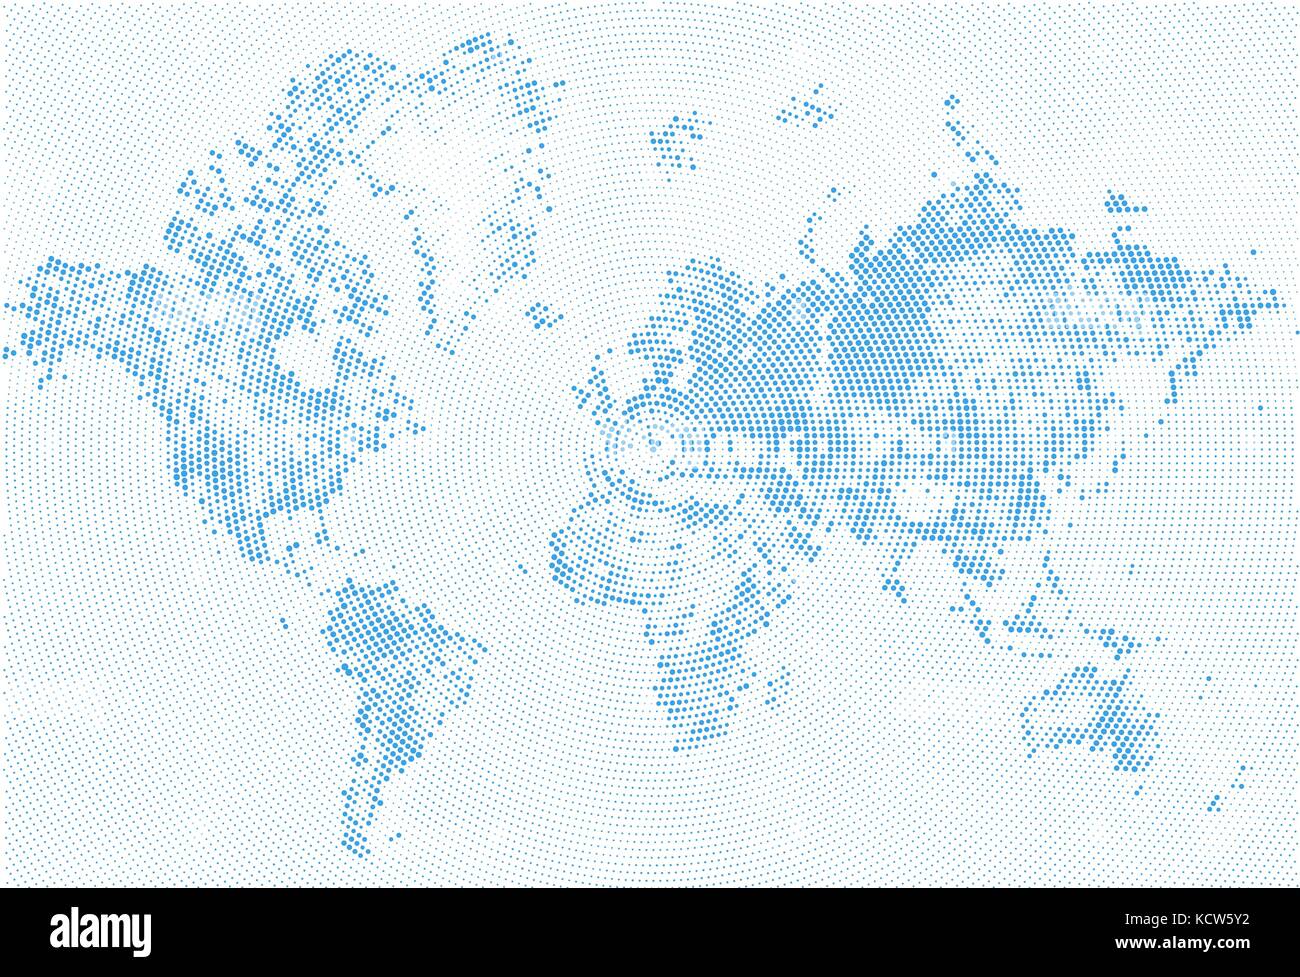 Résumé La carte à points demi-teinte bleu et blanc effet grunge illustration. carte du monde de silhouettes. formes continentales de points monochromes circulaire radiale. Illustration de Vecteur